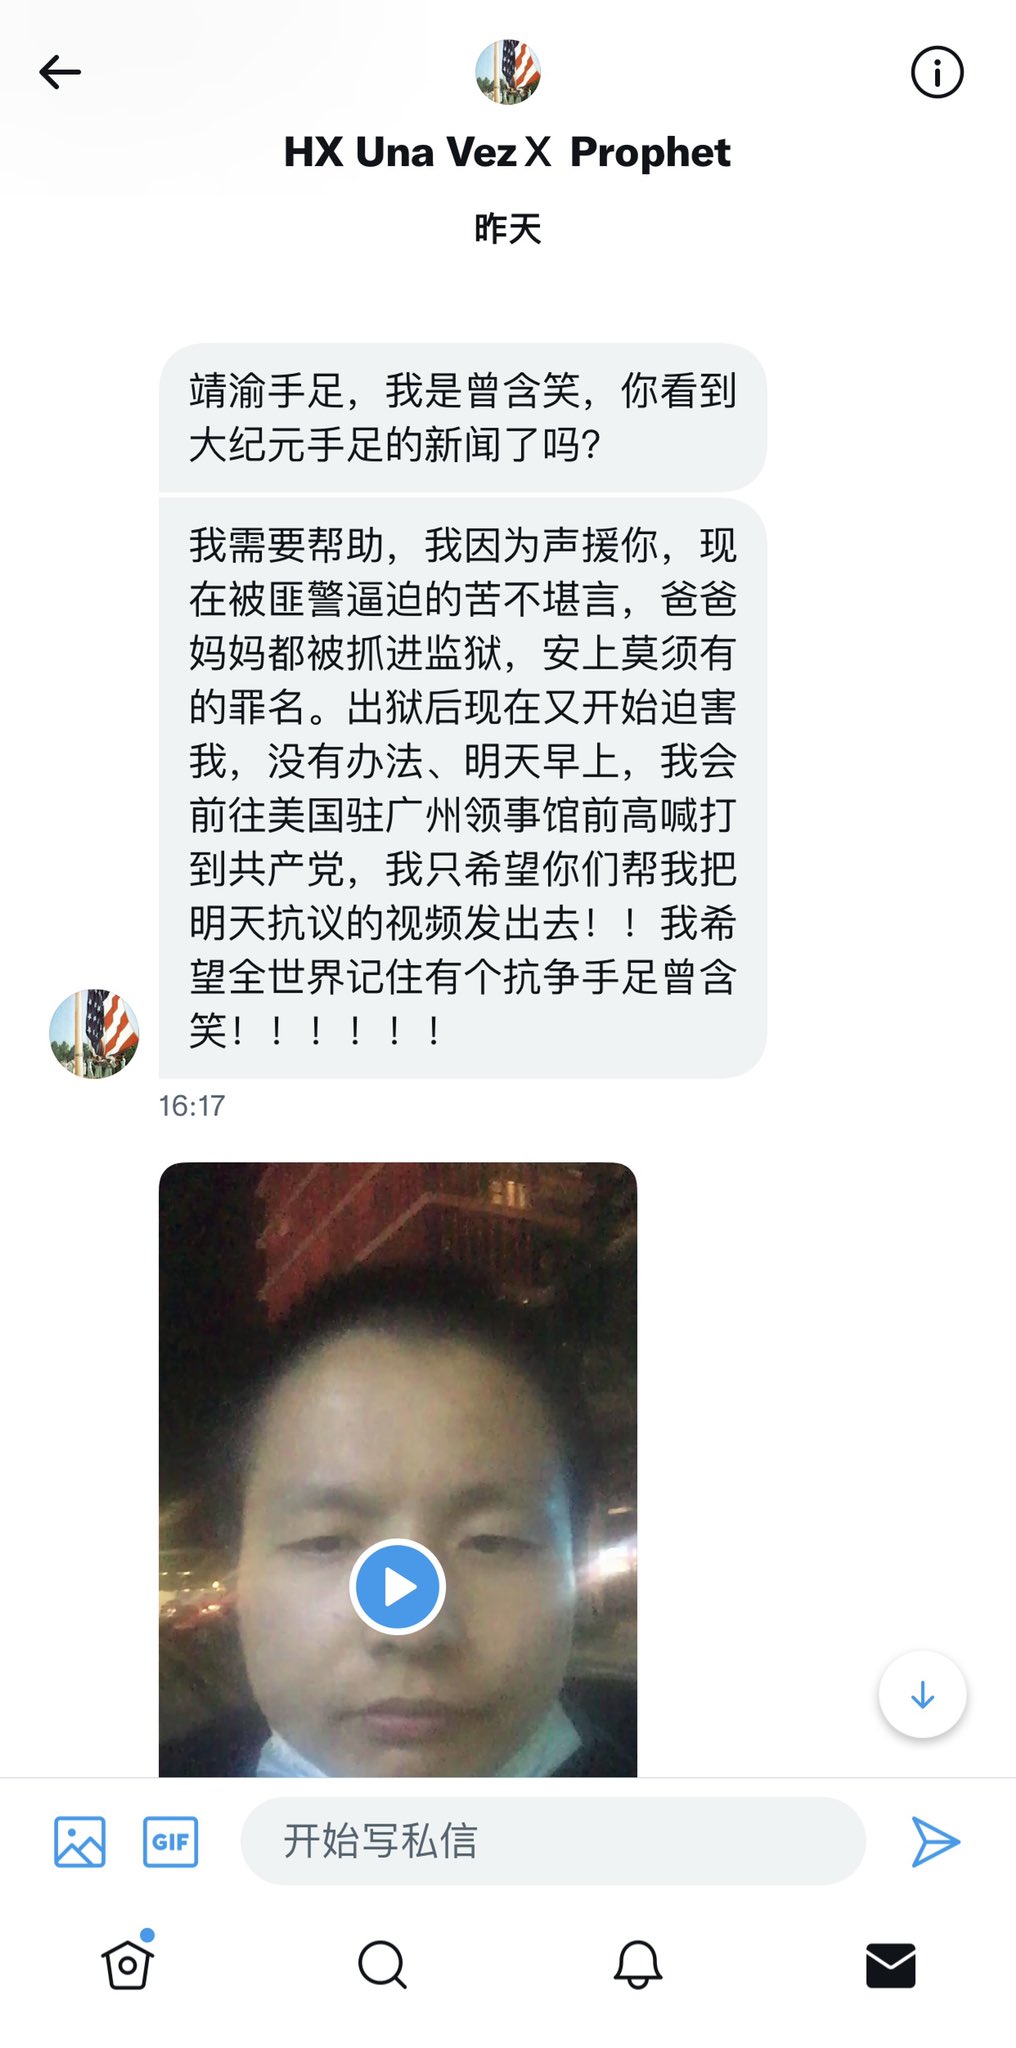 王靖渝 Wang Jingyu On Twitter 我看到这则视频，非常悲痛！ 昨天下午，大纪元的记者告知我因为声援我被中共匪警抓捕迫害